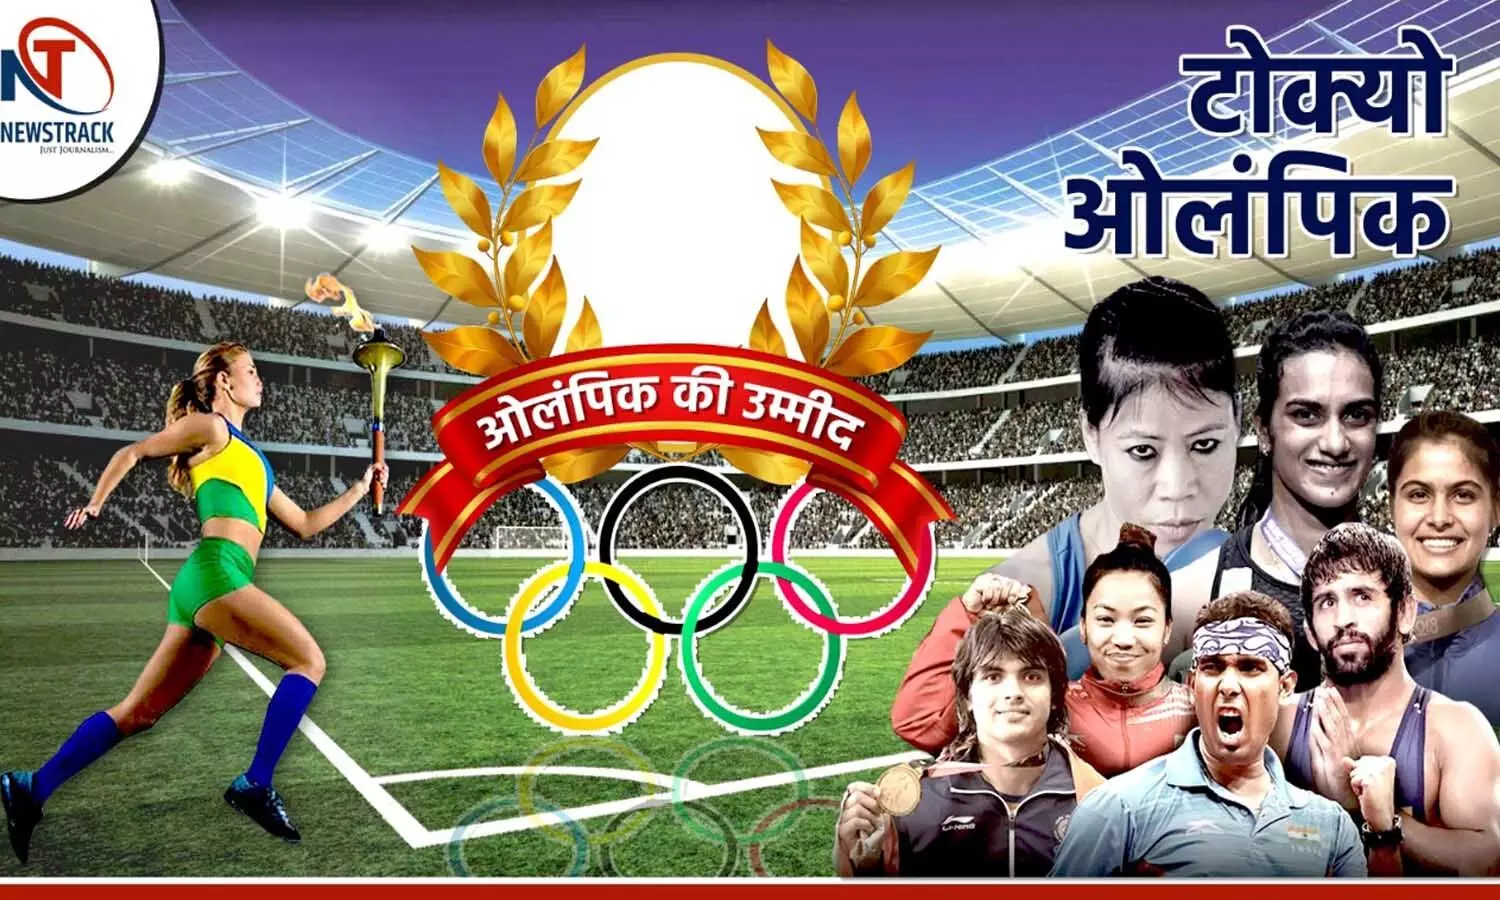 Tokyo Olympics: ये भारतीय खिलाड़ी लेंगे ओलंपिक में हिस्सा, यहां देखें पूरी लिस्ट